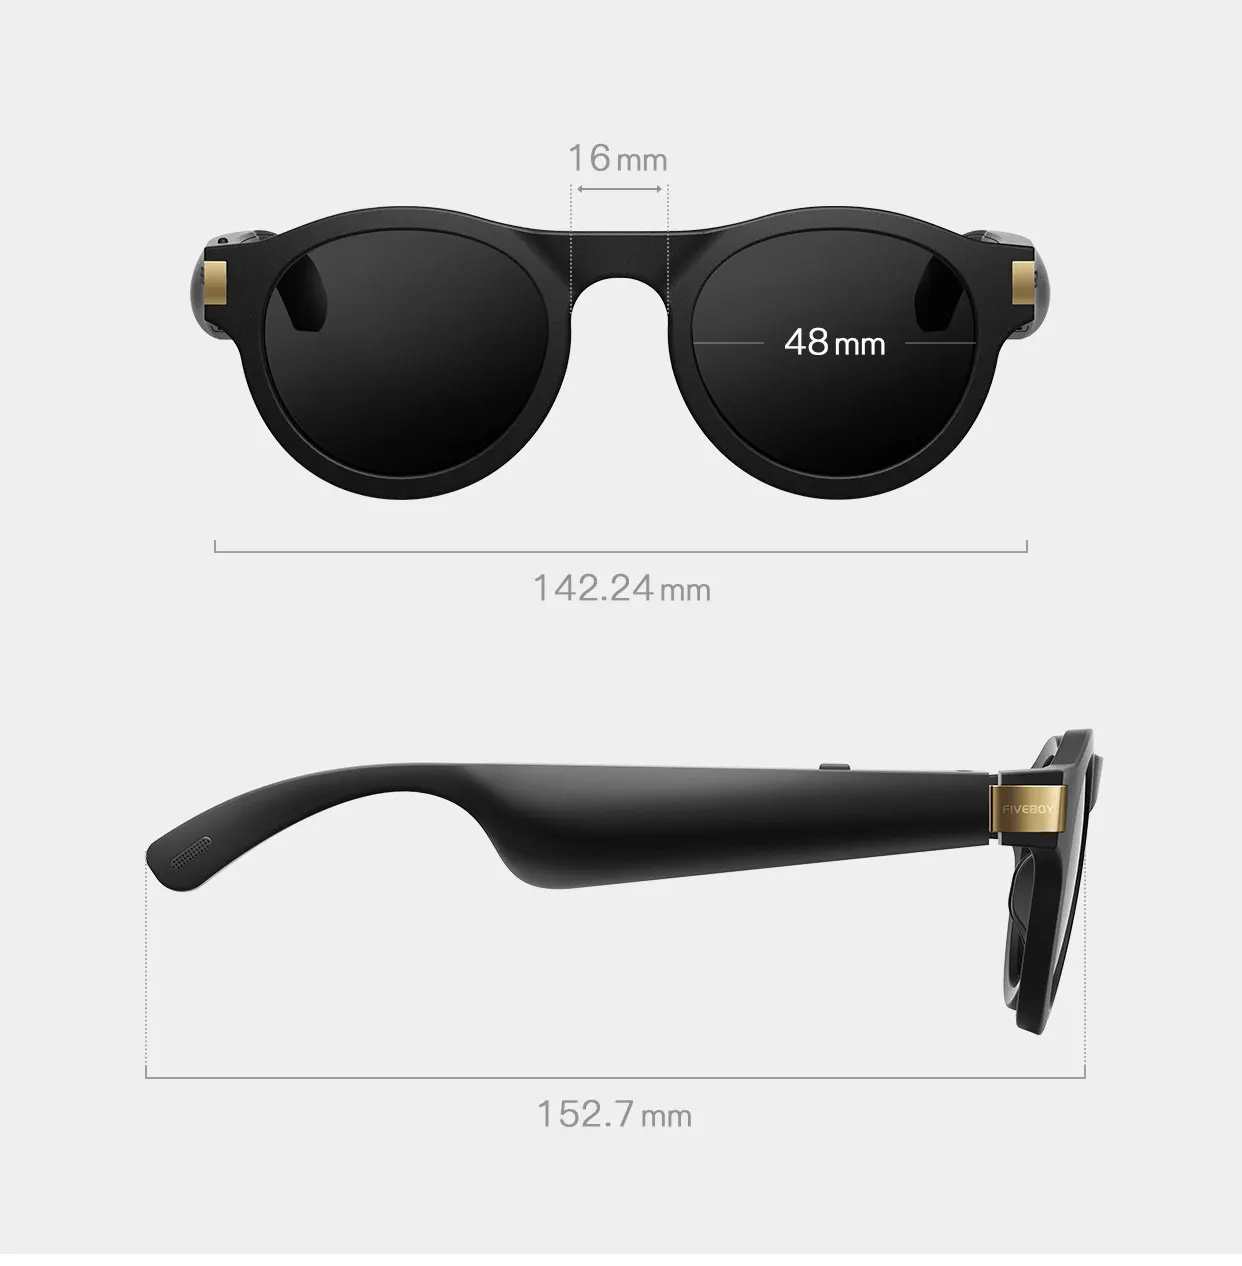 Интеллектуальные солнцезащитные очки поляризованные легкие водонепроницаемые очки с наушниками Bluetooth 5,0 костная проводимость наушники защита вашего барабана